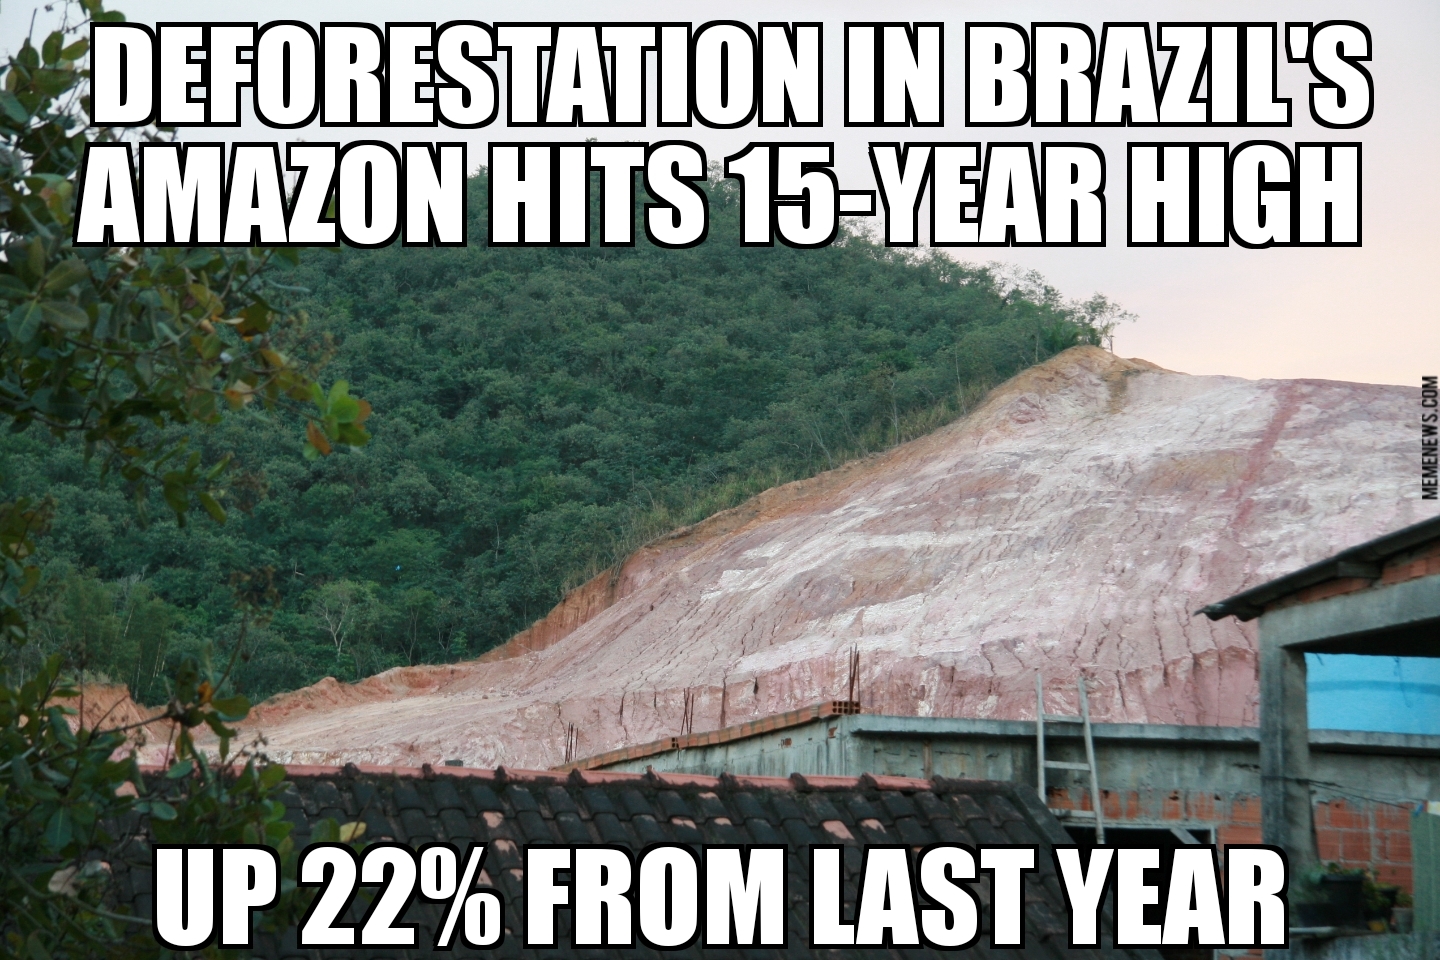 Brazil deforestation rises